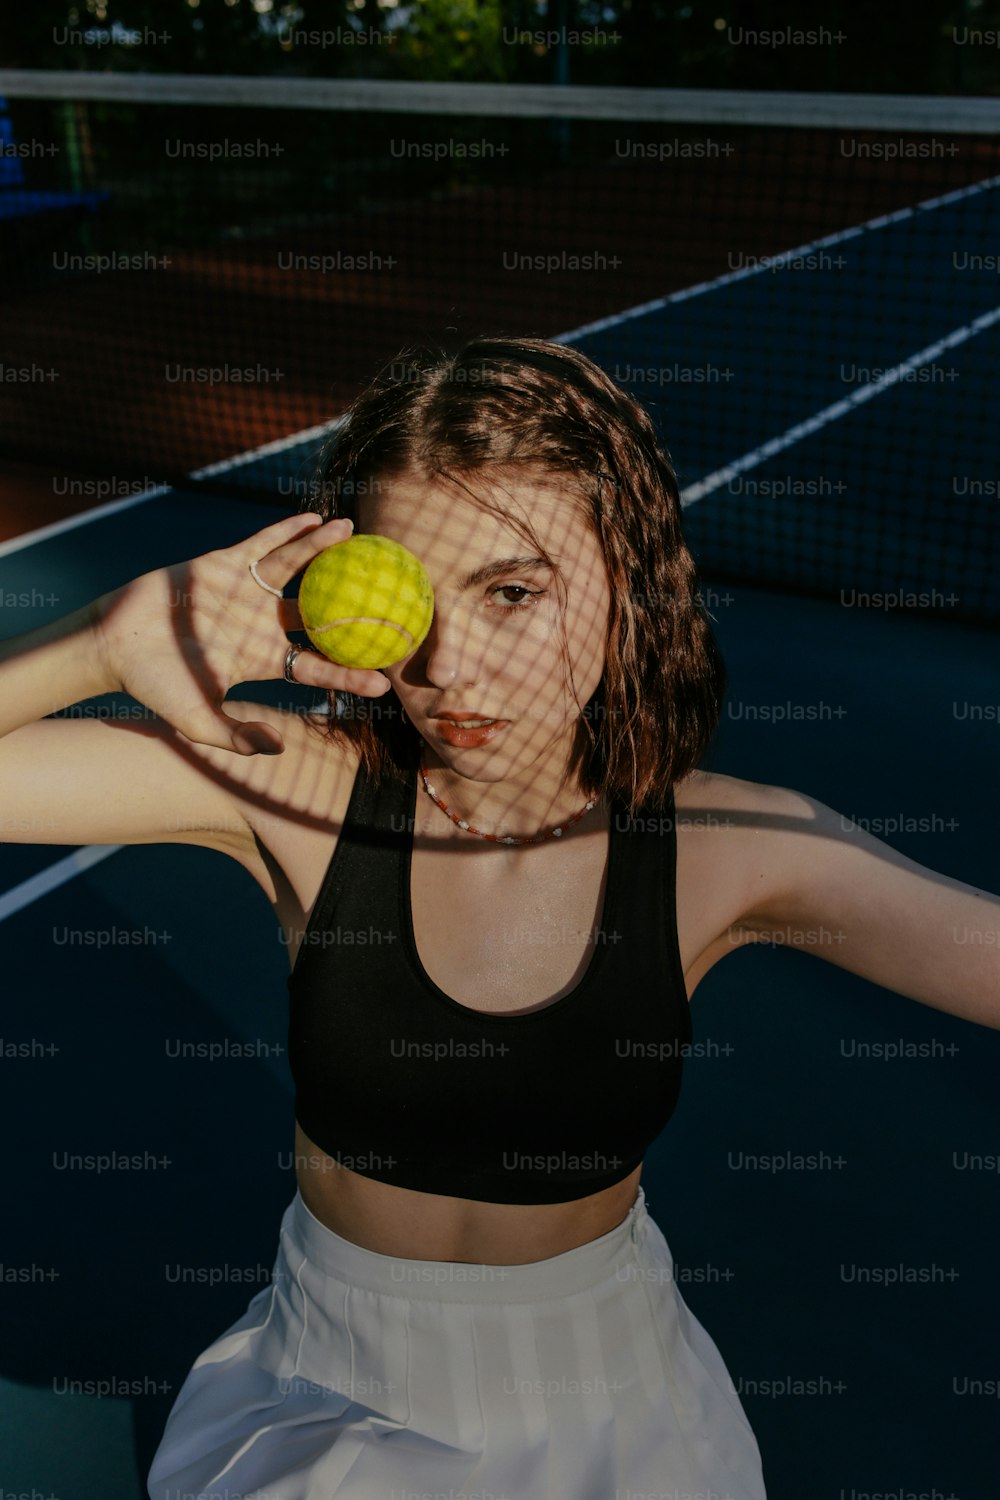 a woman holding a tennis ball and tennis racquet